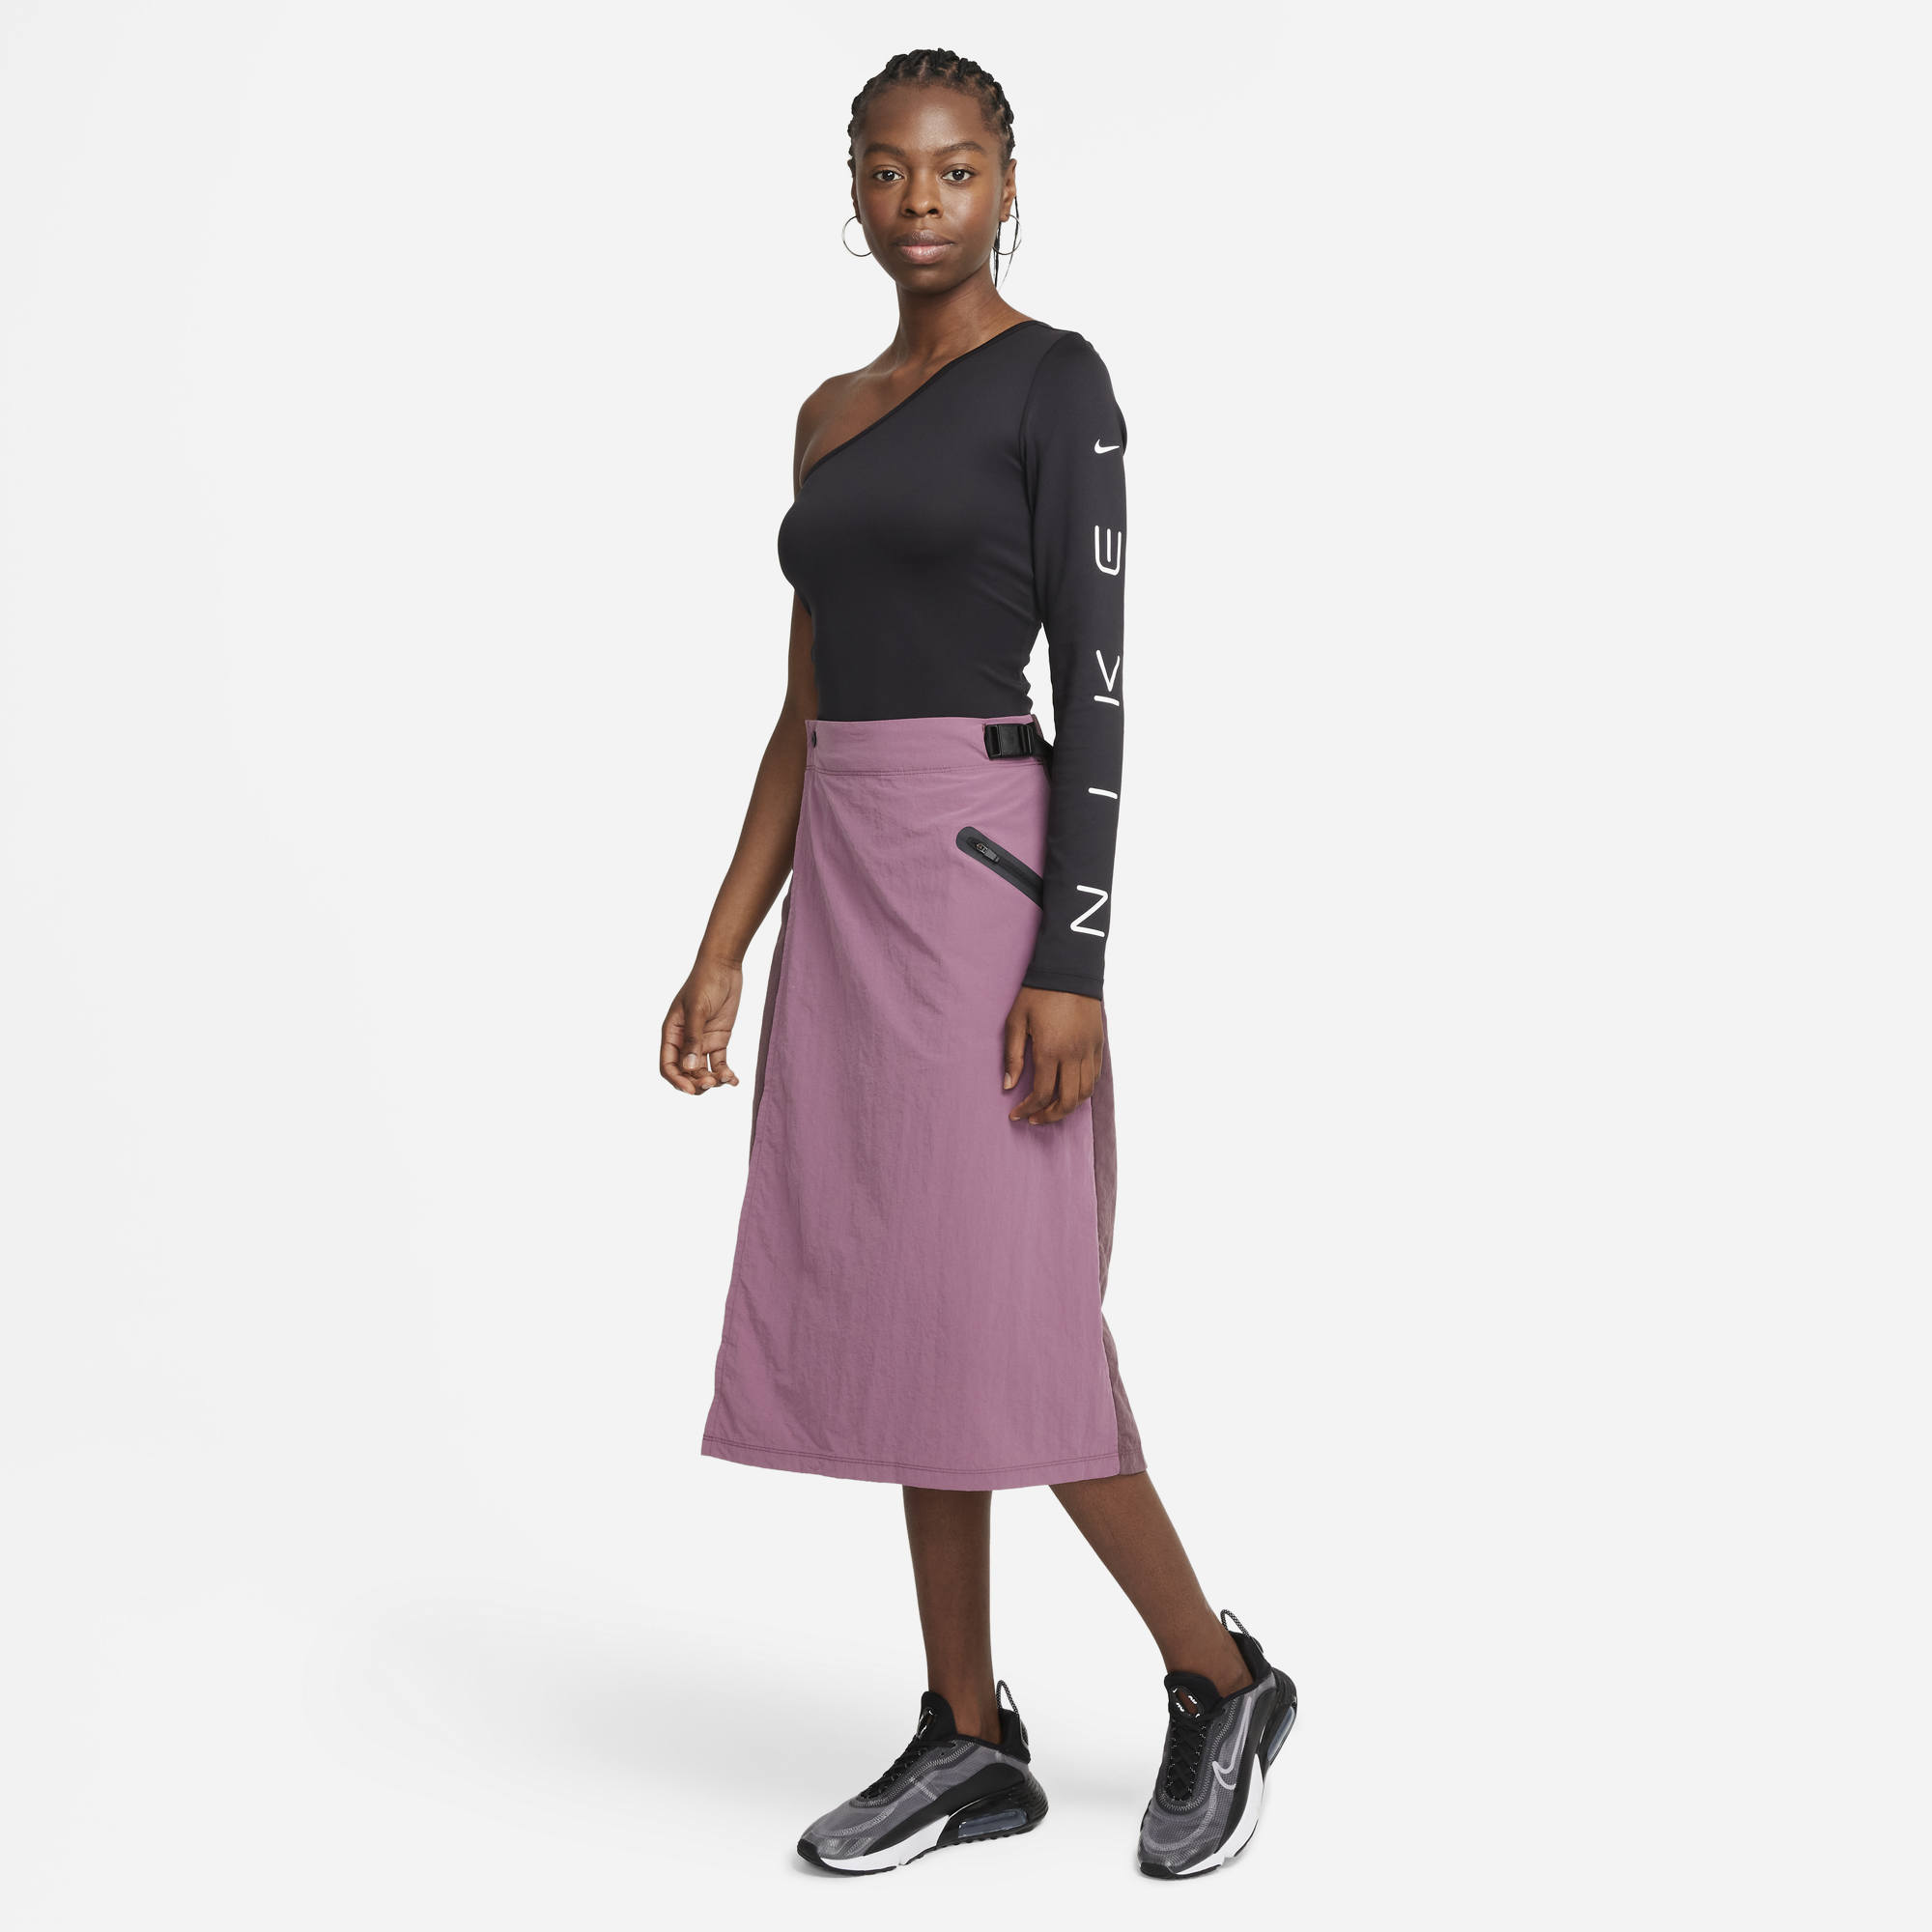 Nike Women's Tech Pack Skirt (Dark Wine/Light Mulberry)